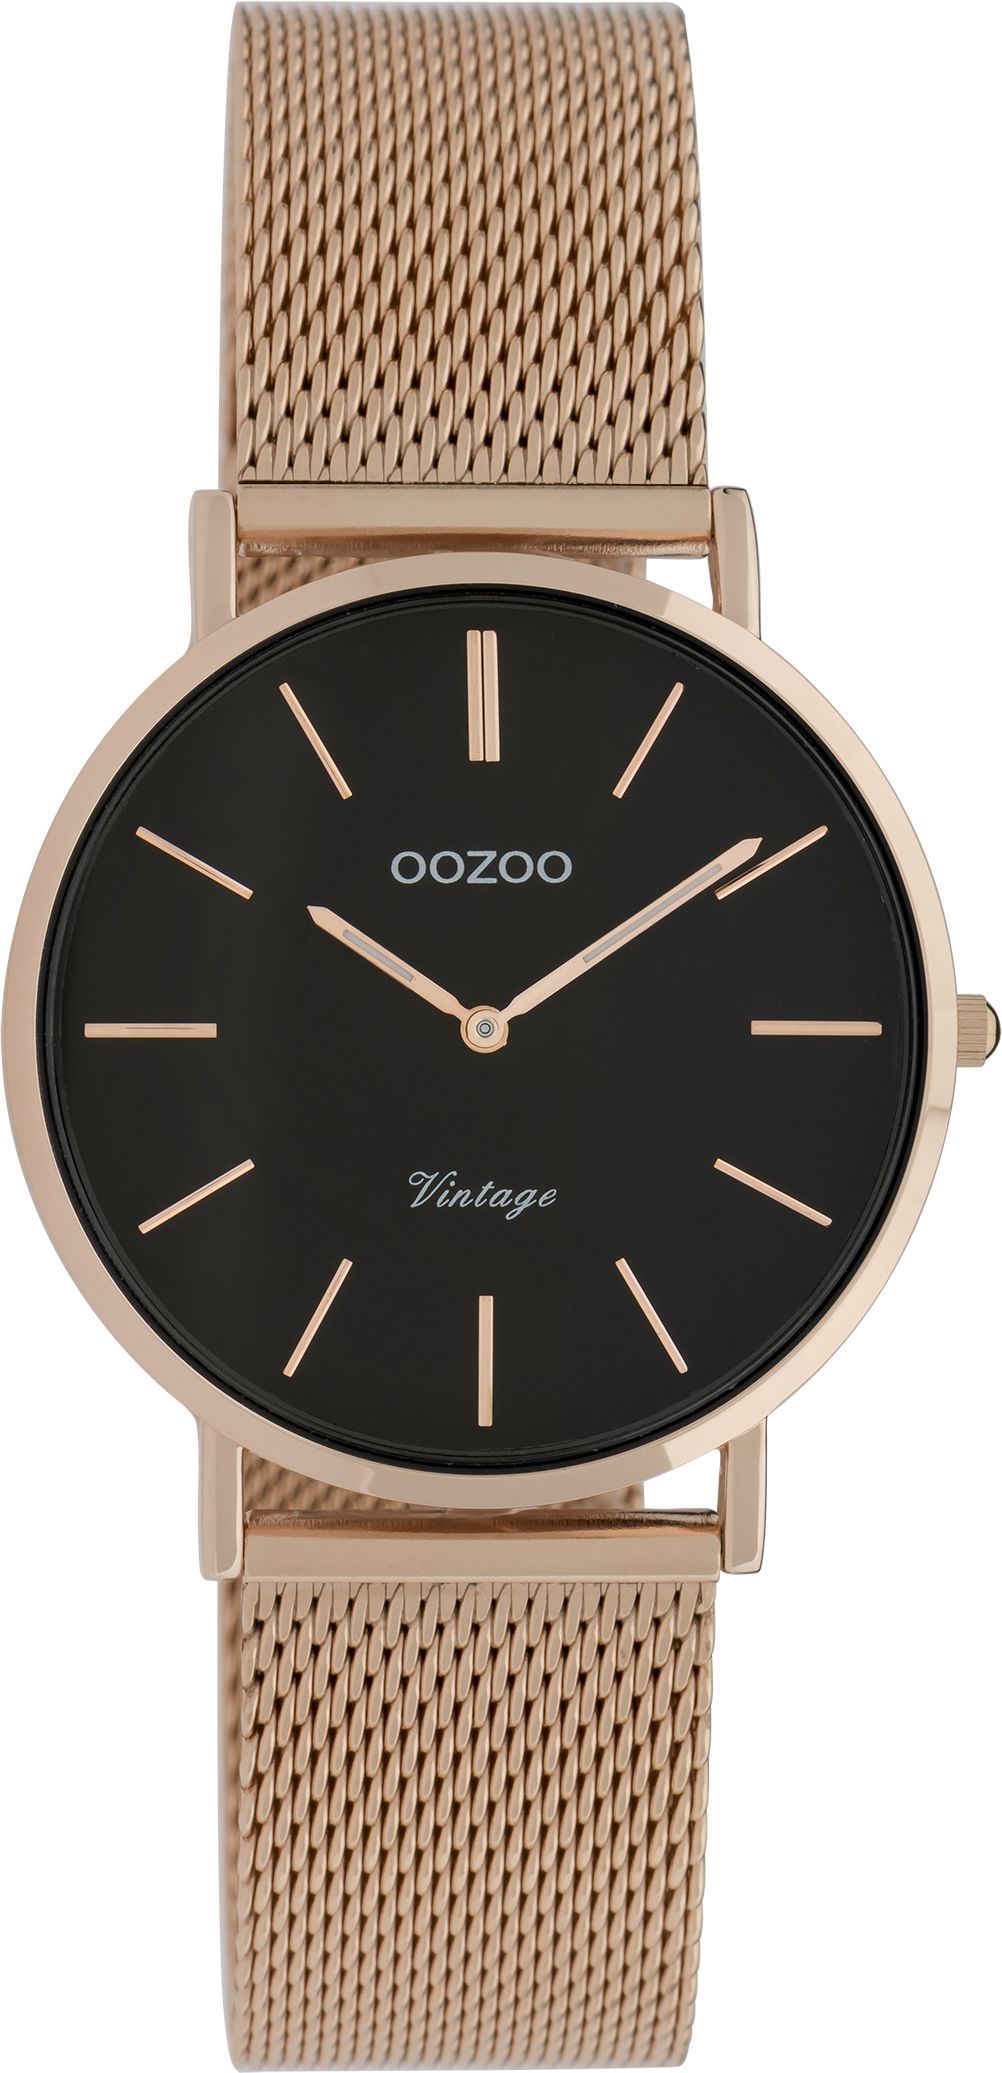 OOZOO Vintage C9927